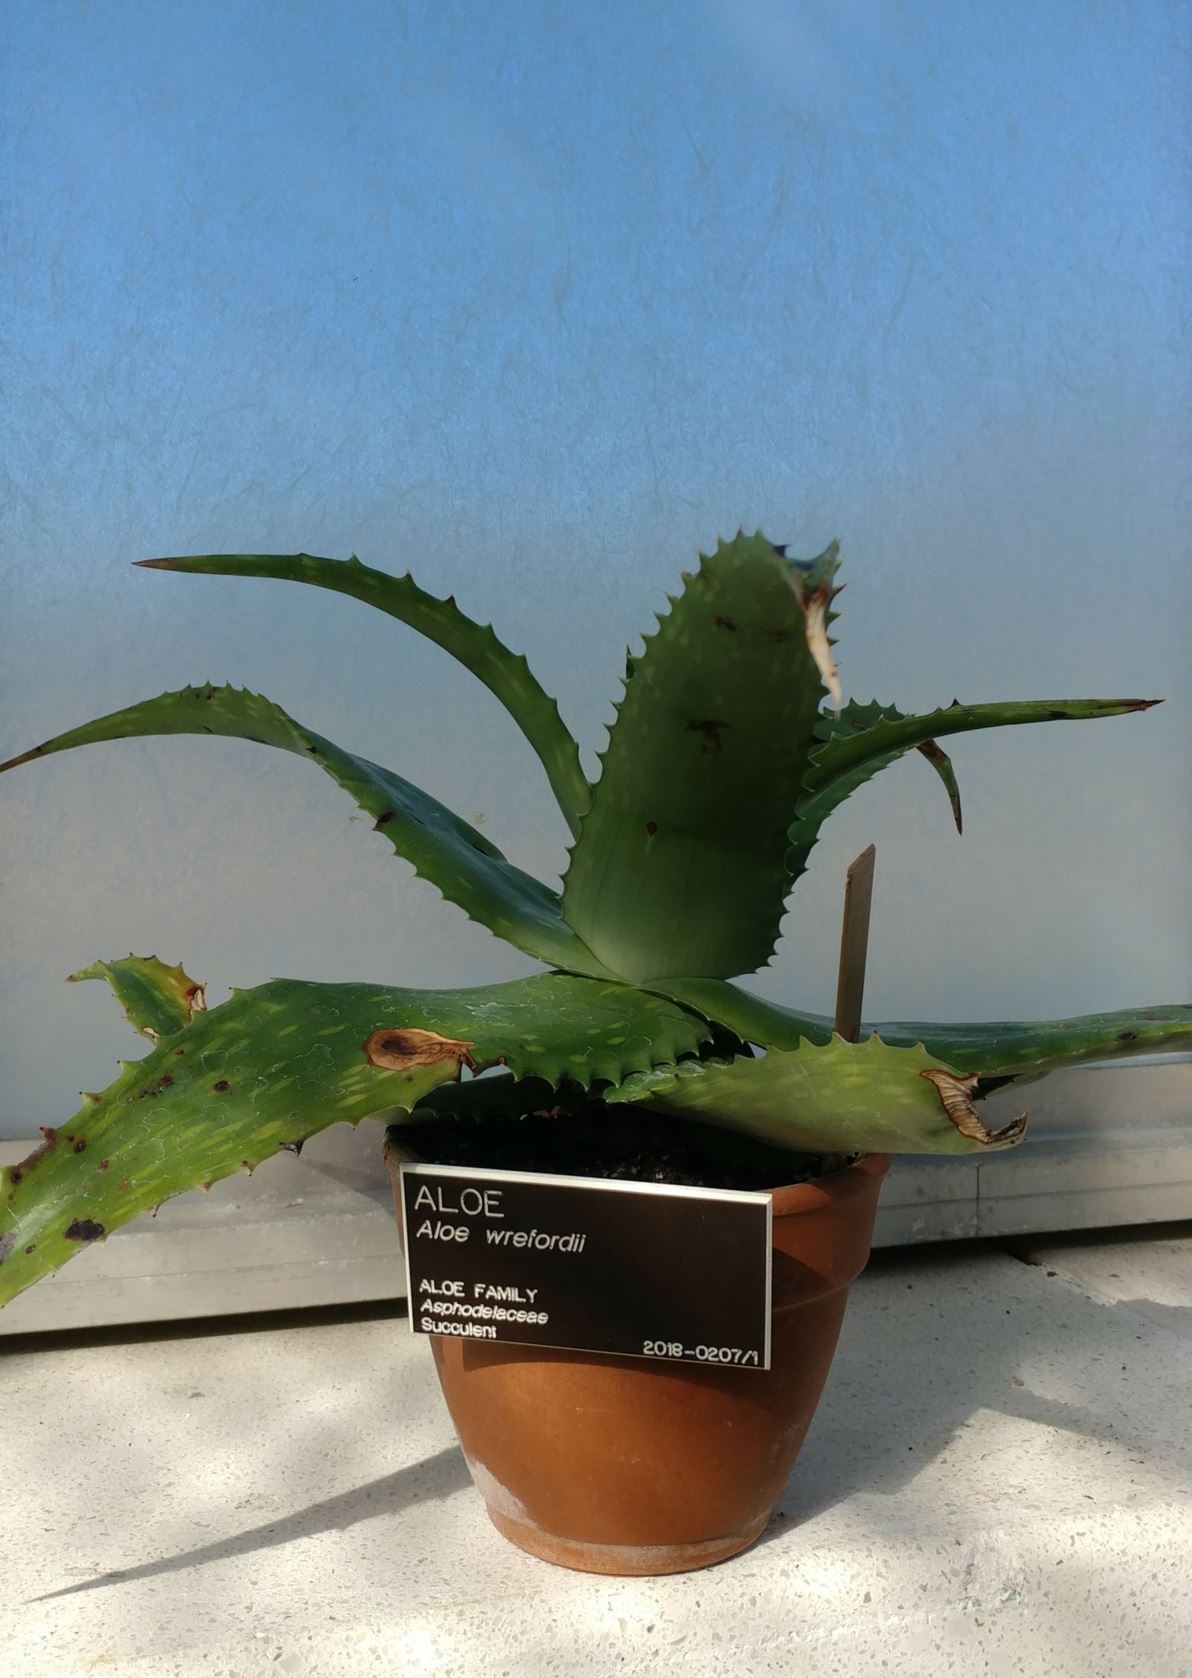 Aloe wrefordii - aloe